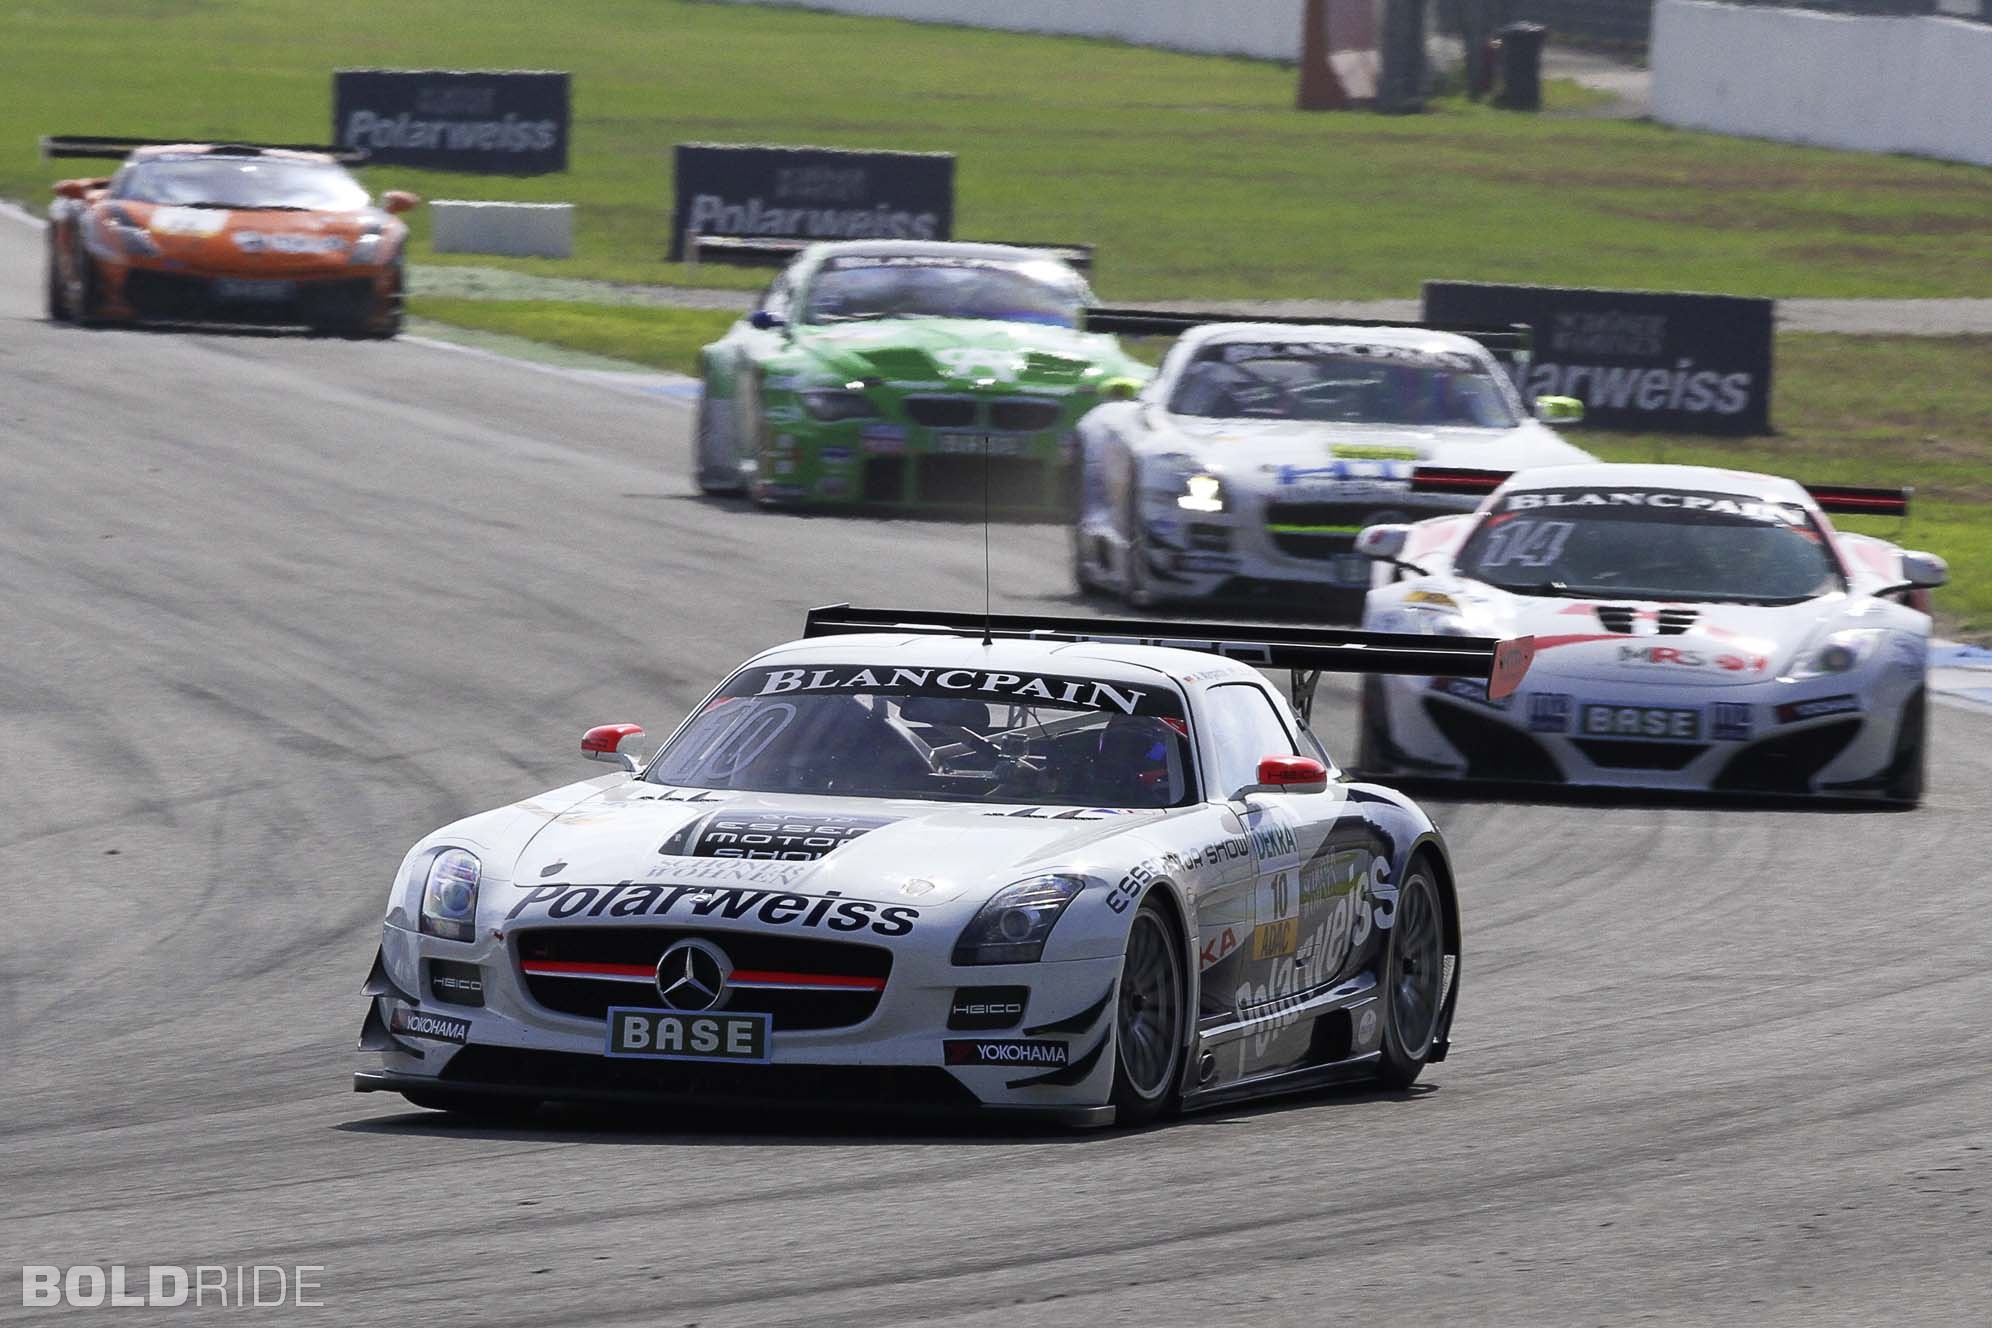 2013, Mercedes, Benz, Sls, Amg, Gt3, Race, Racing, Supercar Wallpaper